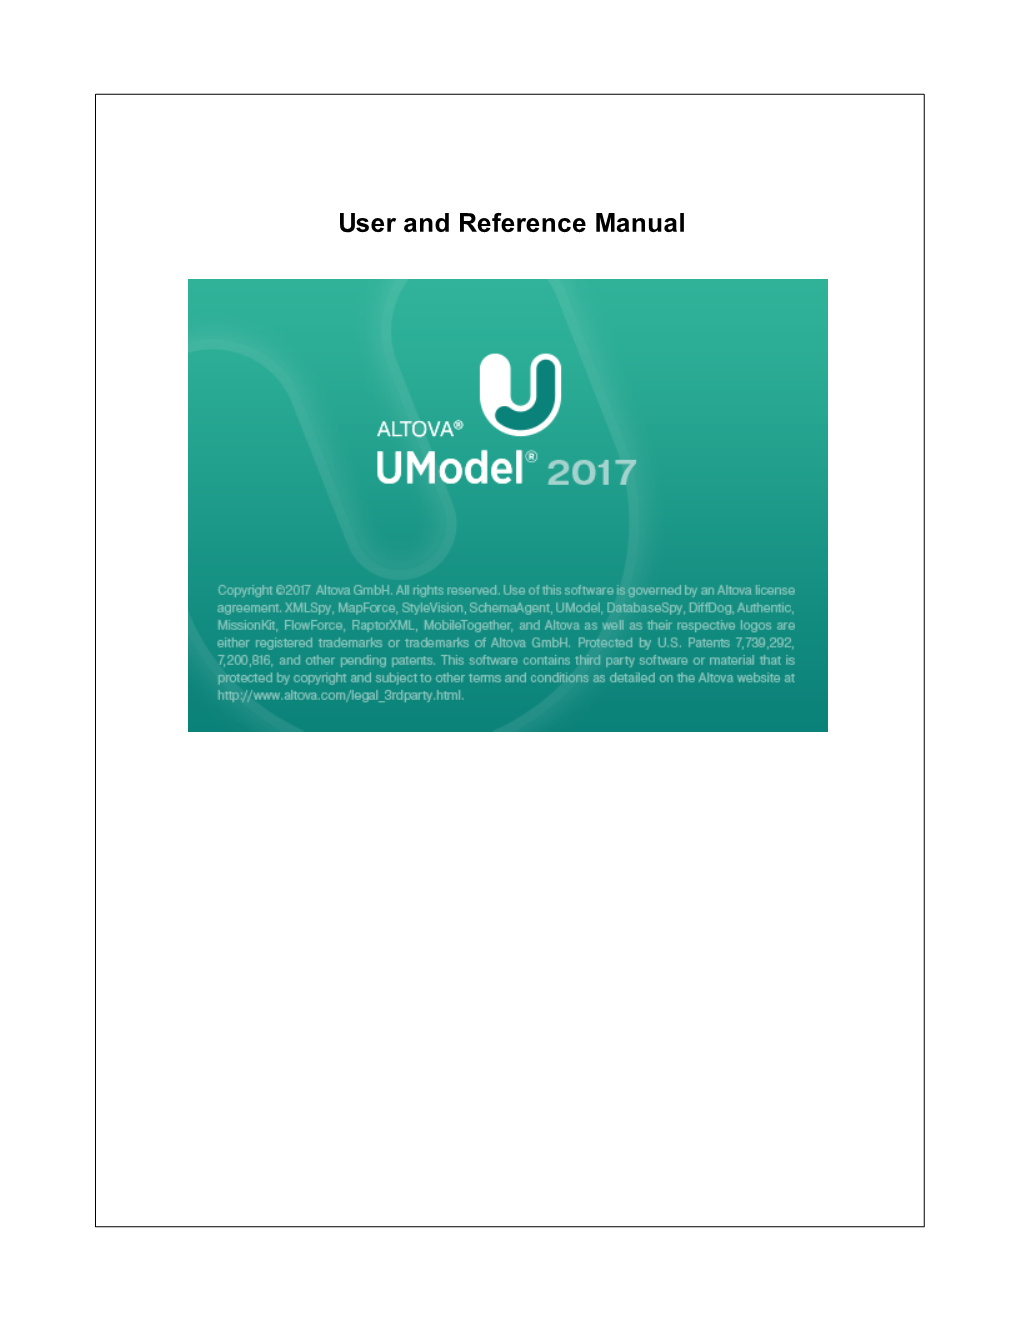 Altova Umodel 2017 User & Reference Manual